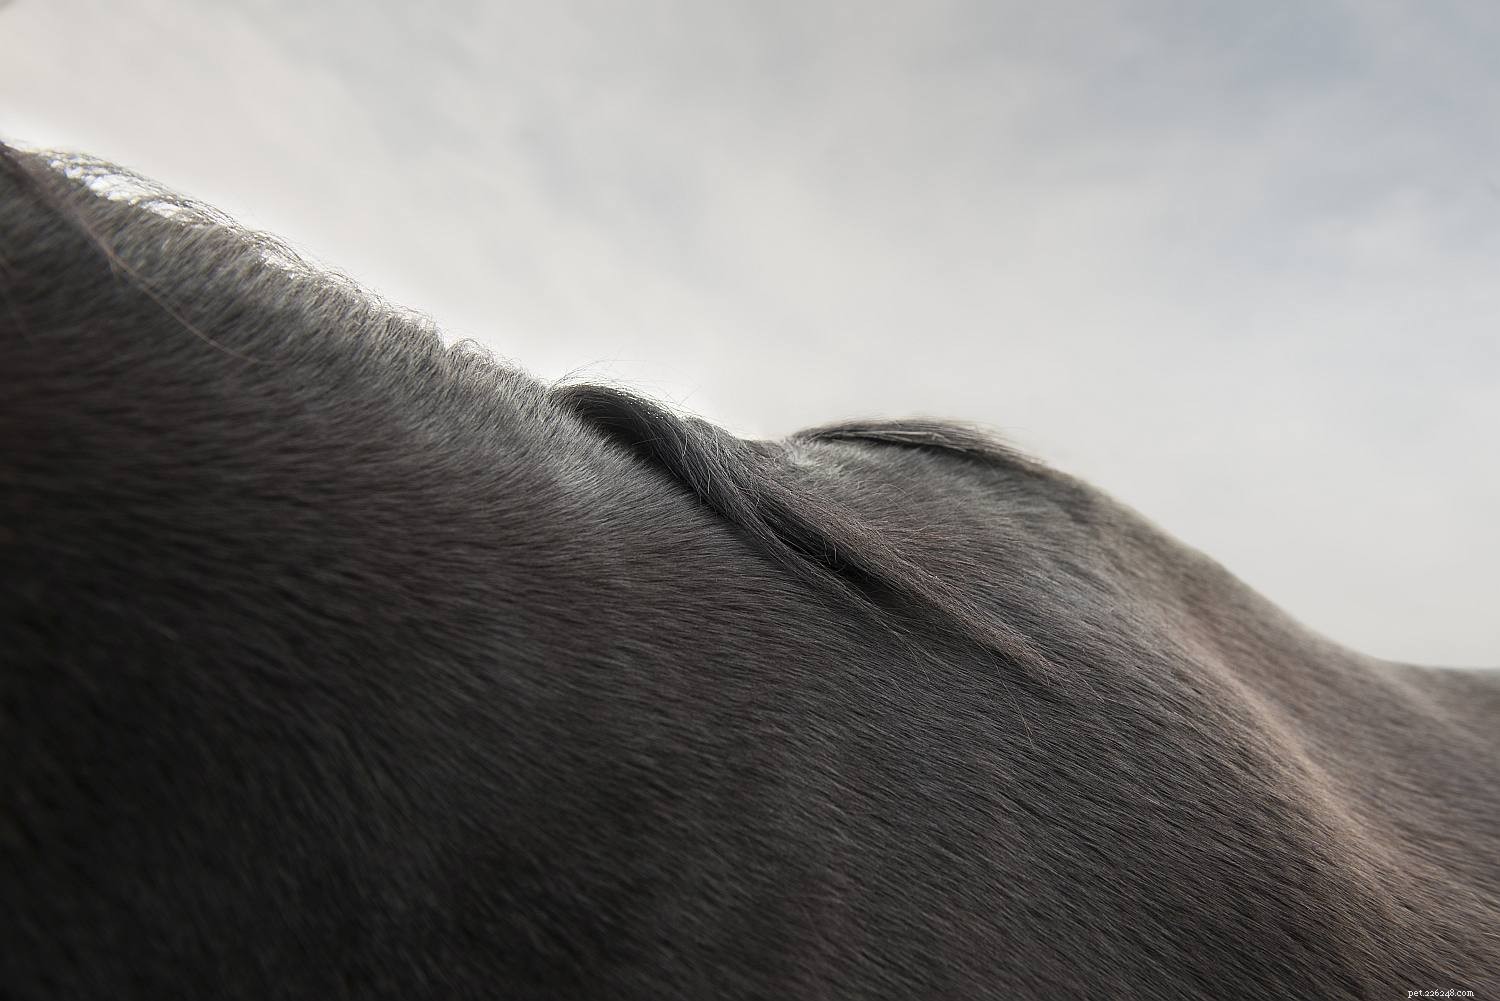 Una guida per immagini alle diverse parti di un cavallo